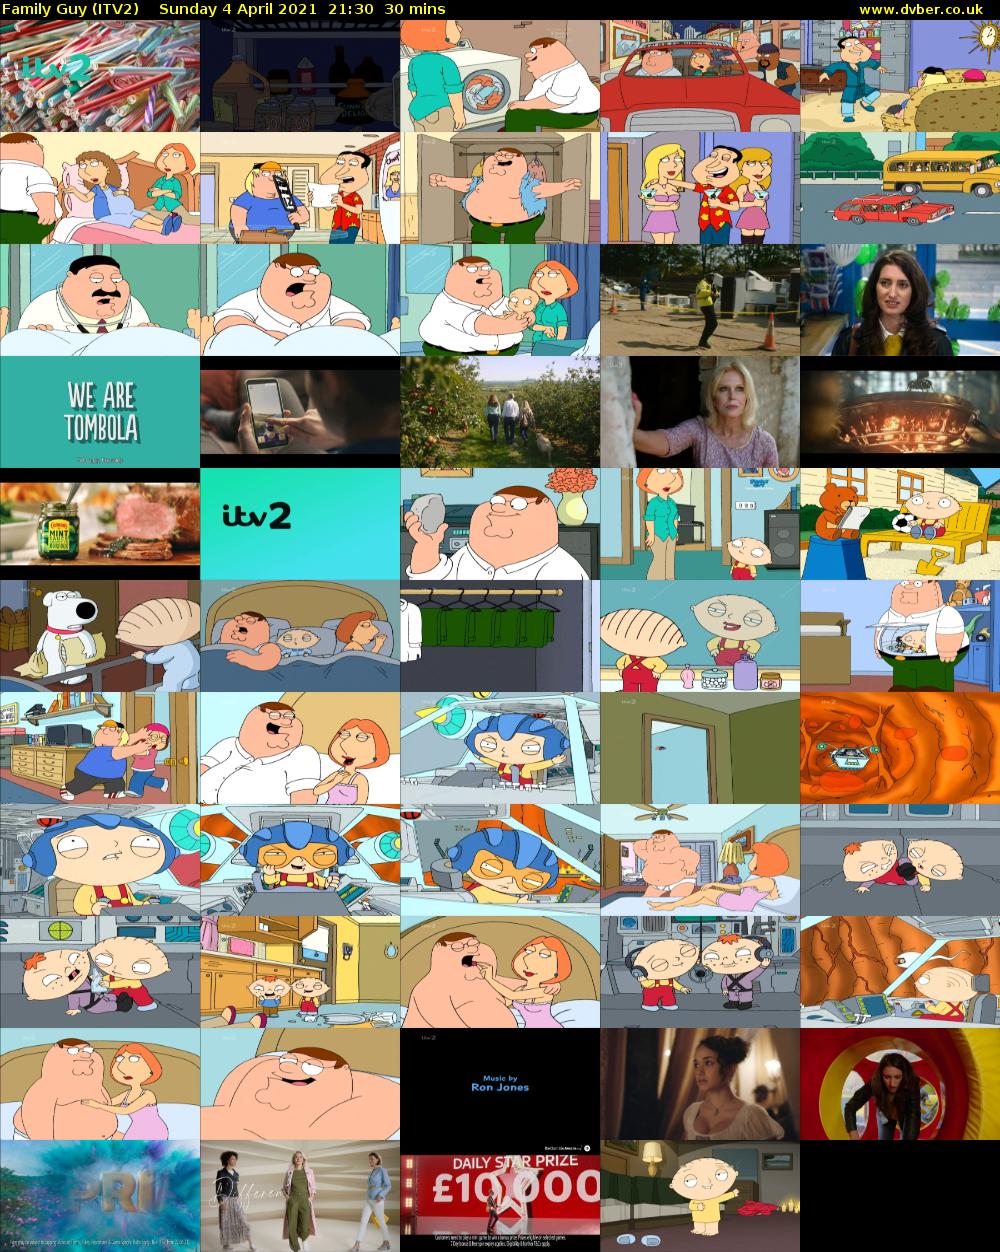 Family Guy (ITV2) Sunday 4 April 2021 21:30 - 22:00